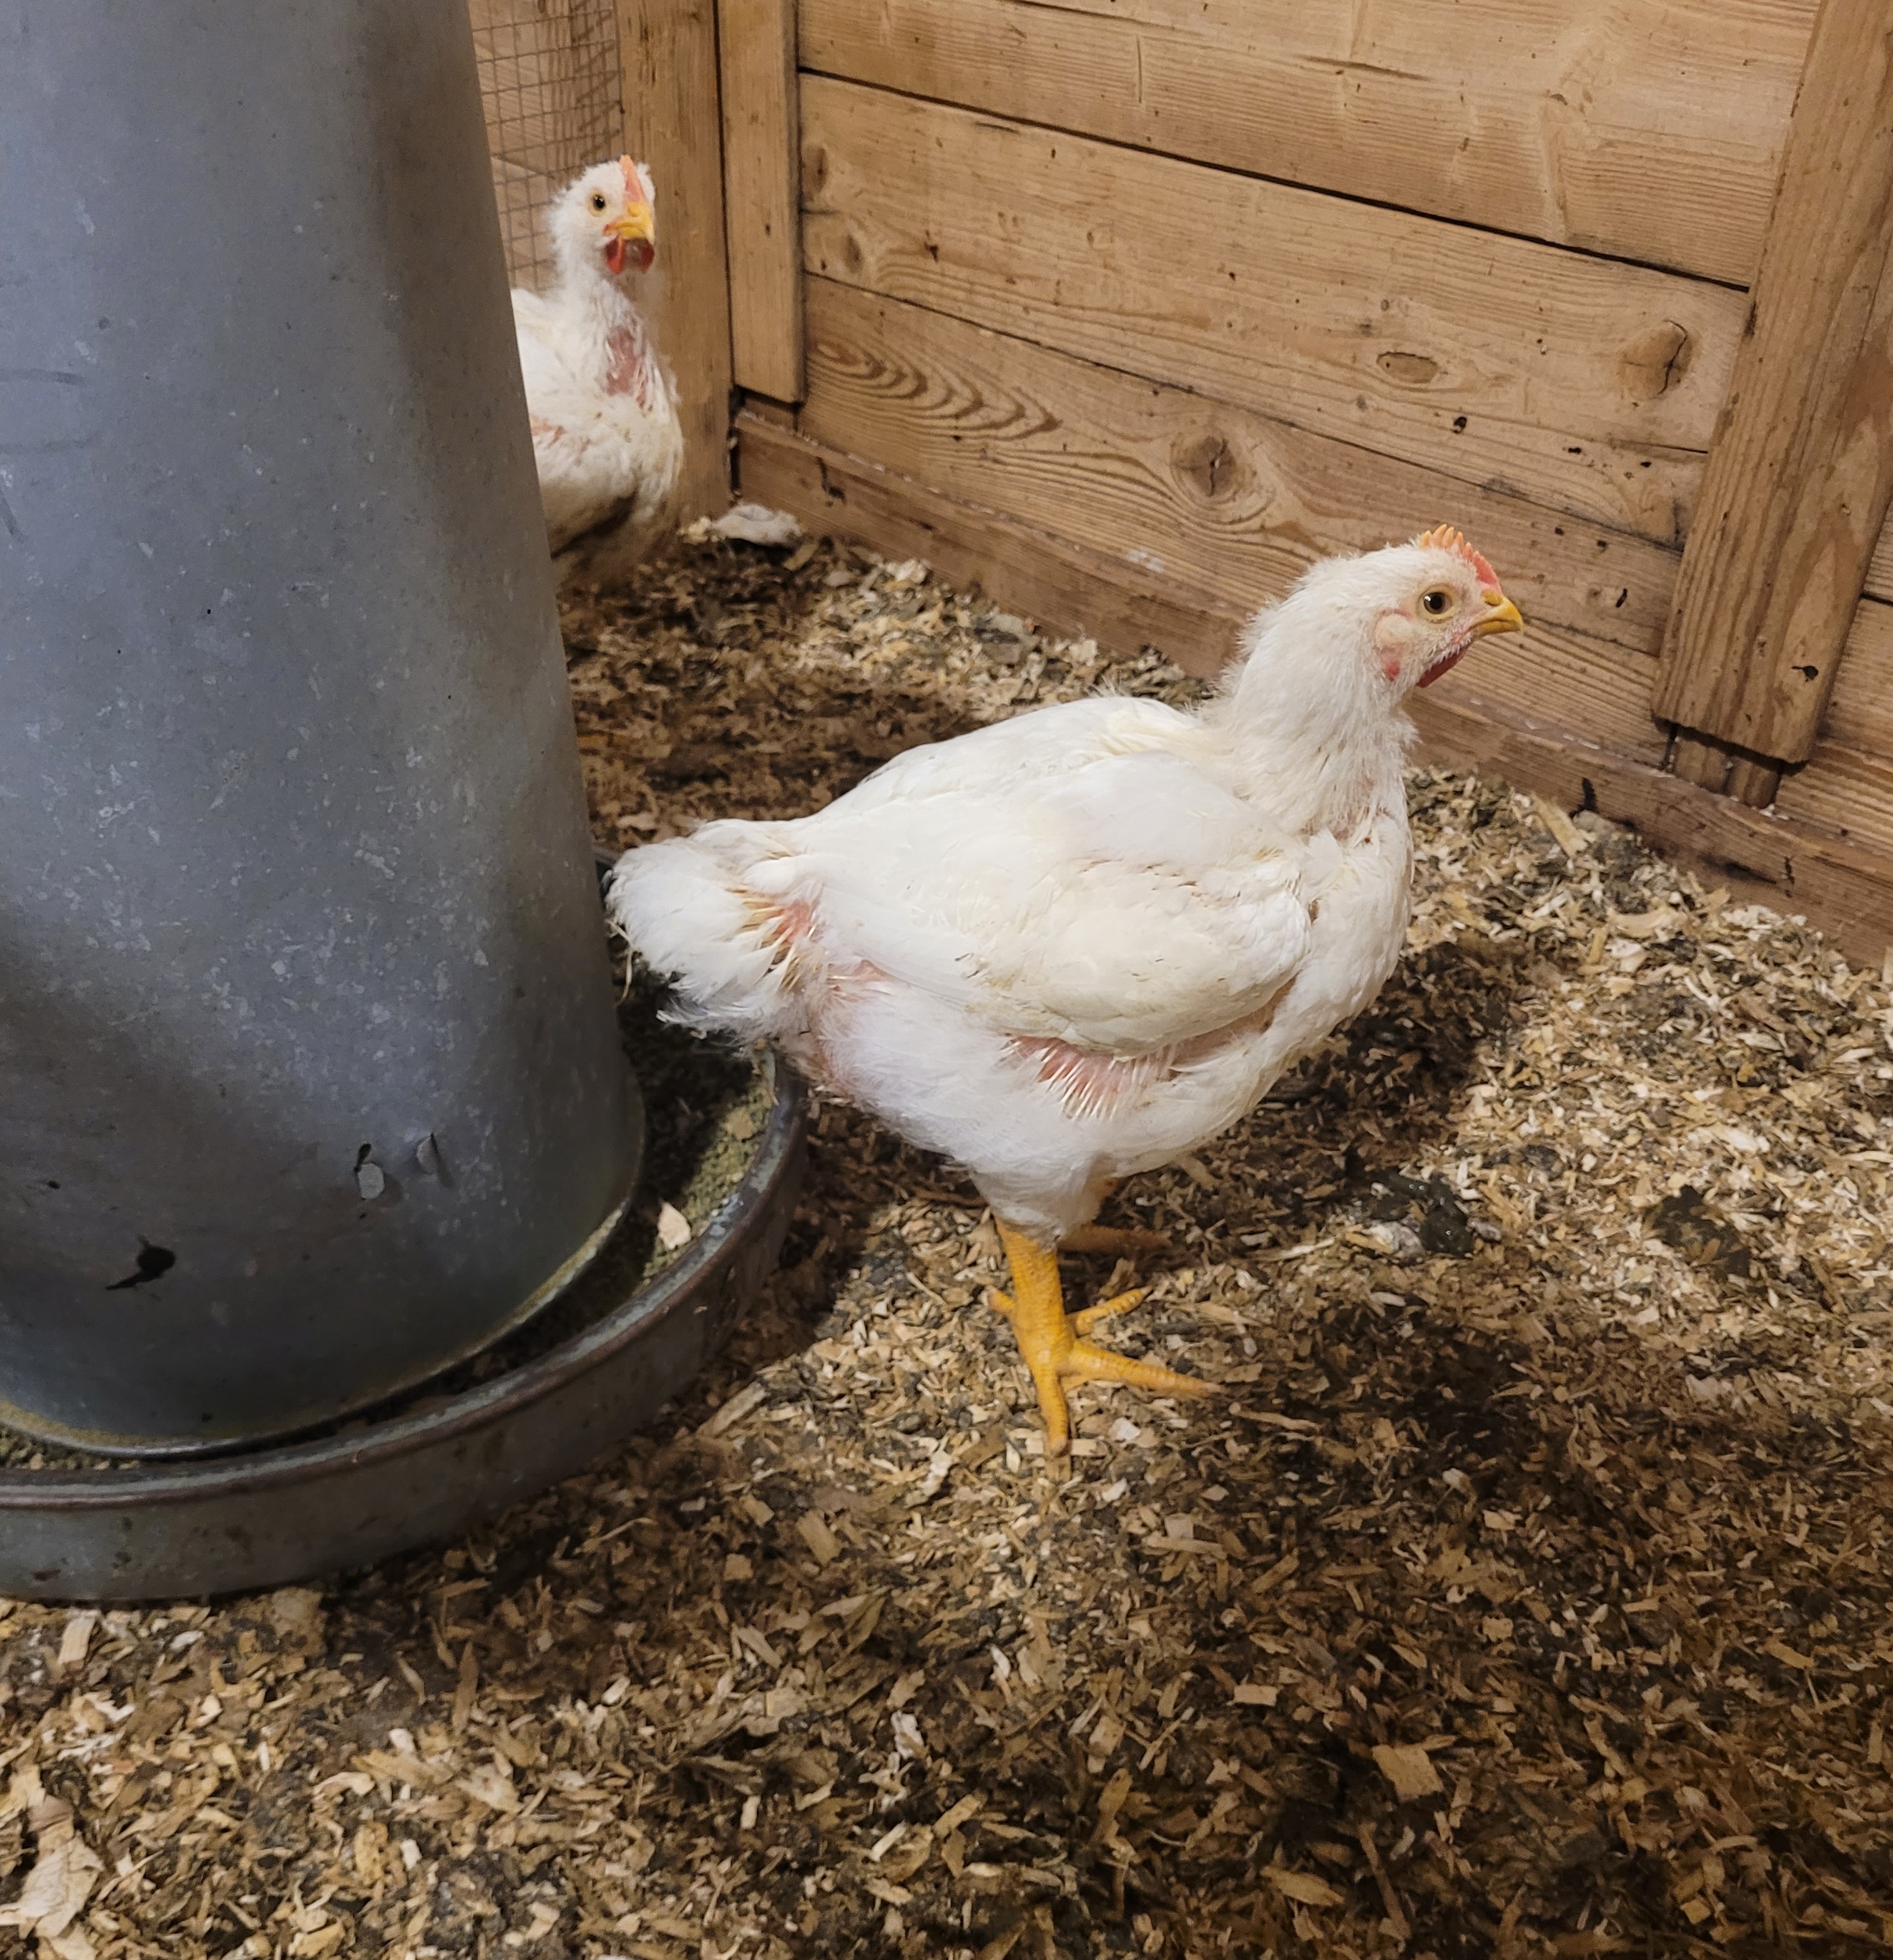 Zu sehen ist ein ausgewachsenes, weißes Huhn, das in einem Stall steht. Im Hintergrund befindet sich ein weiteres Huhn.